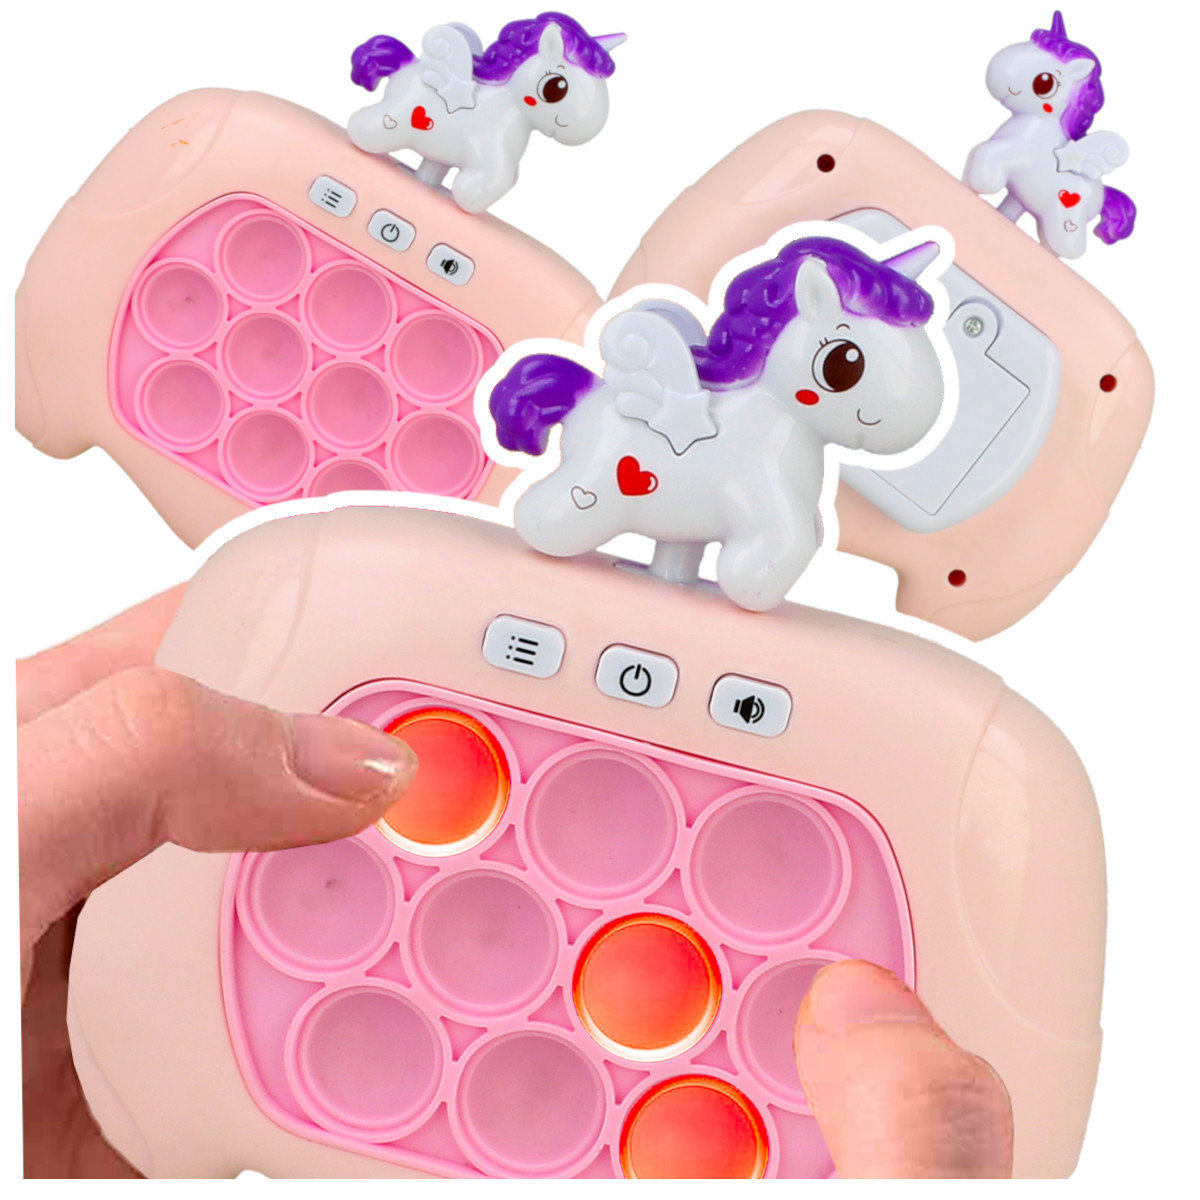 Gra Sensoryczna Jednorożec - Antystresowa Konsola Pop It dla Dzieci Z920R